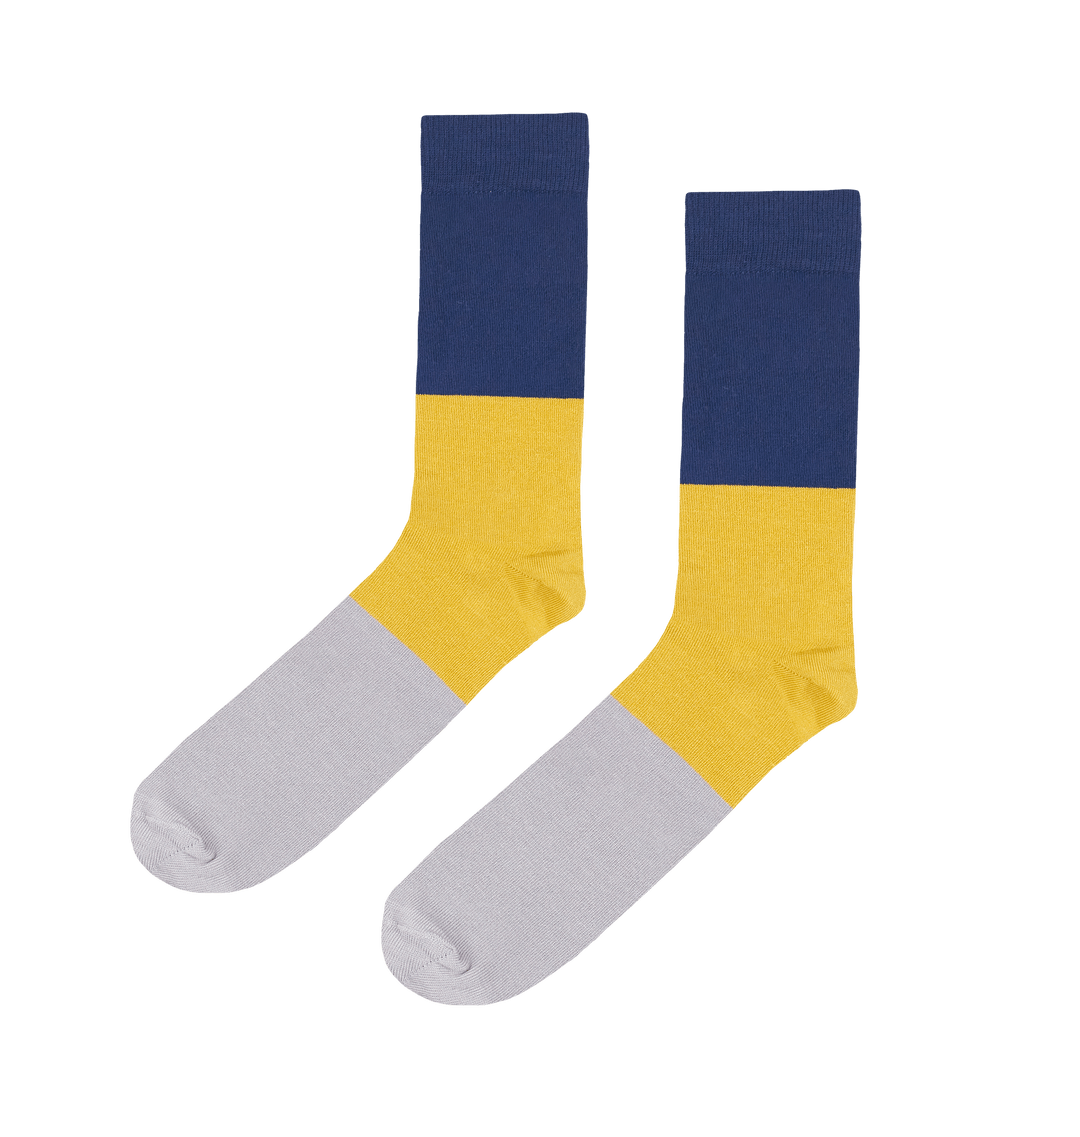 Men's Bamboo Socks